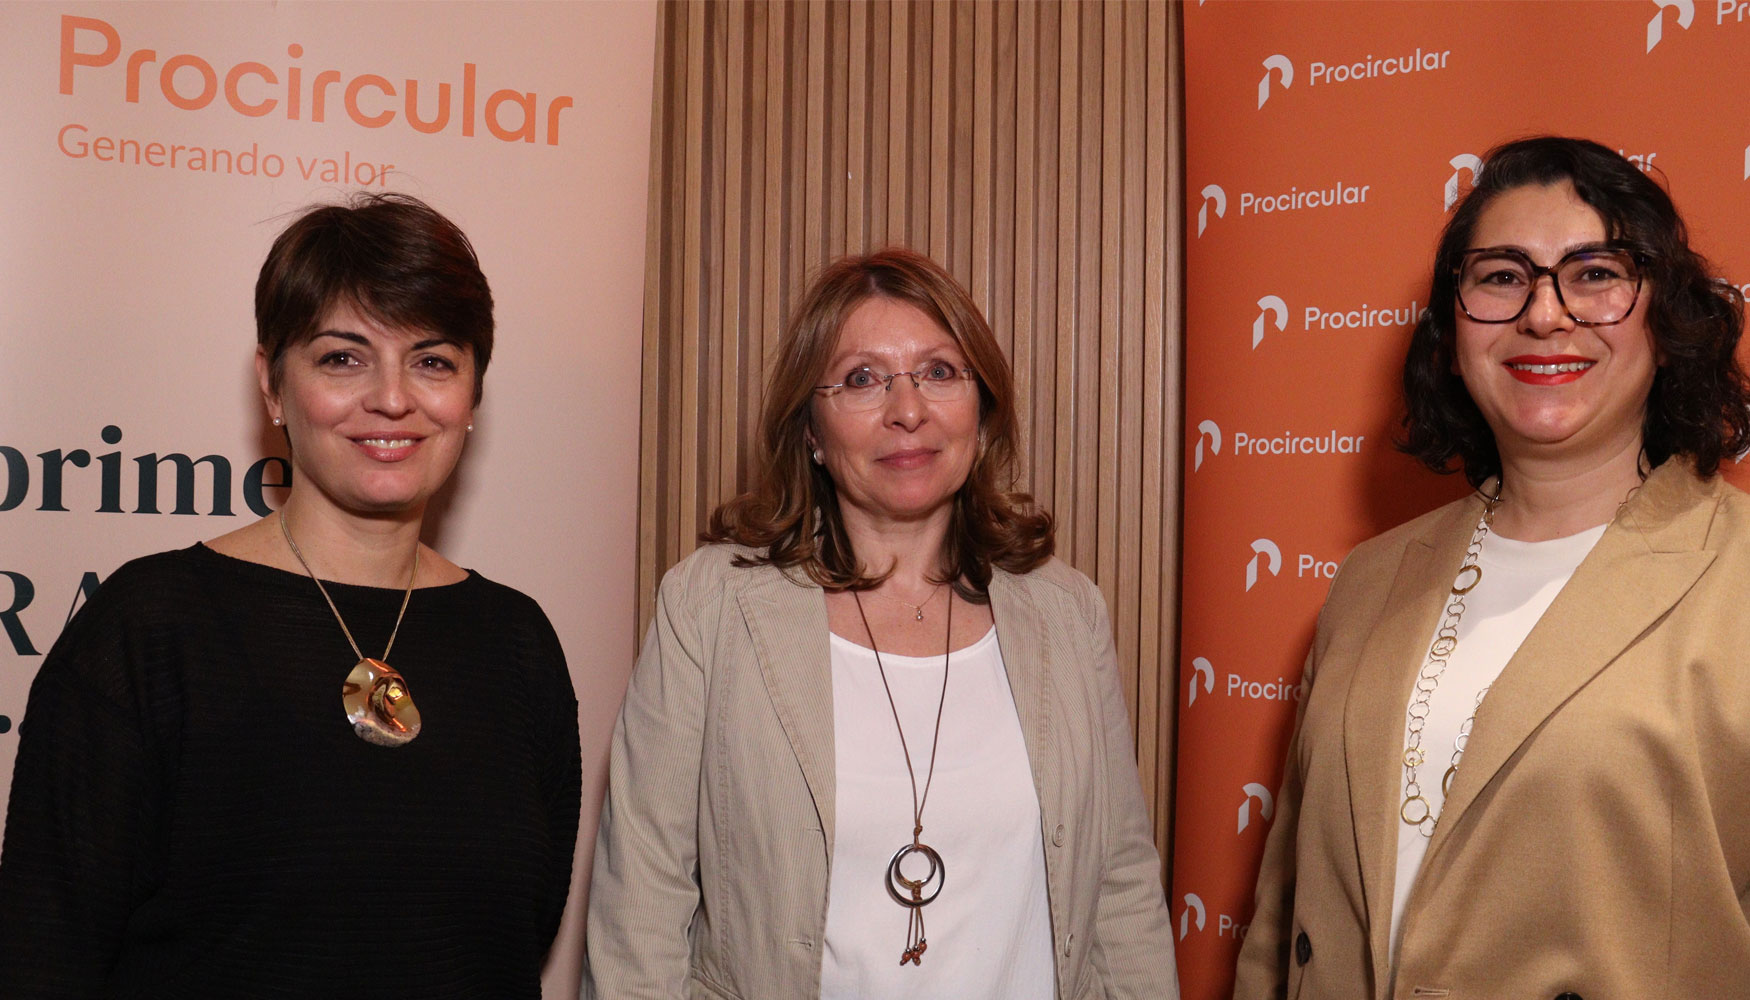 Carmen Snchez Garca de Blas, en el centro de la imagen, es la presidenta del Consejo de Procircular